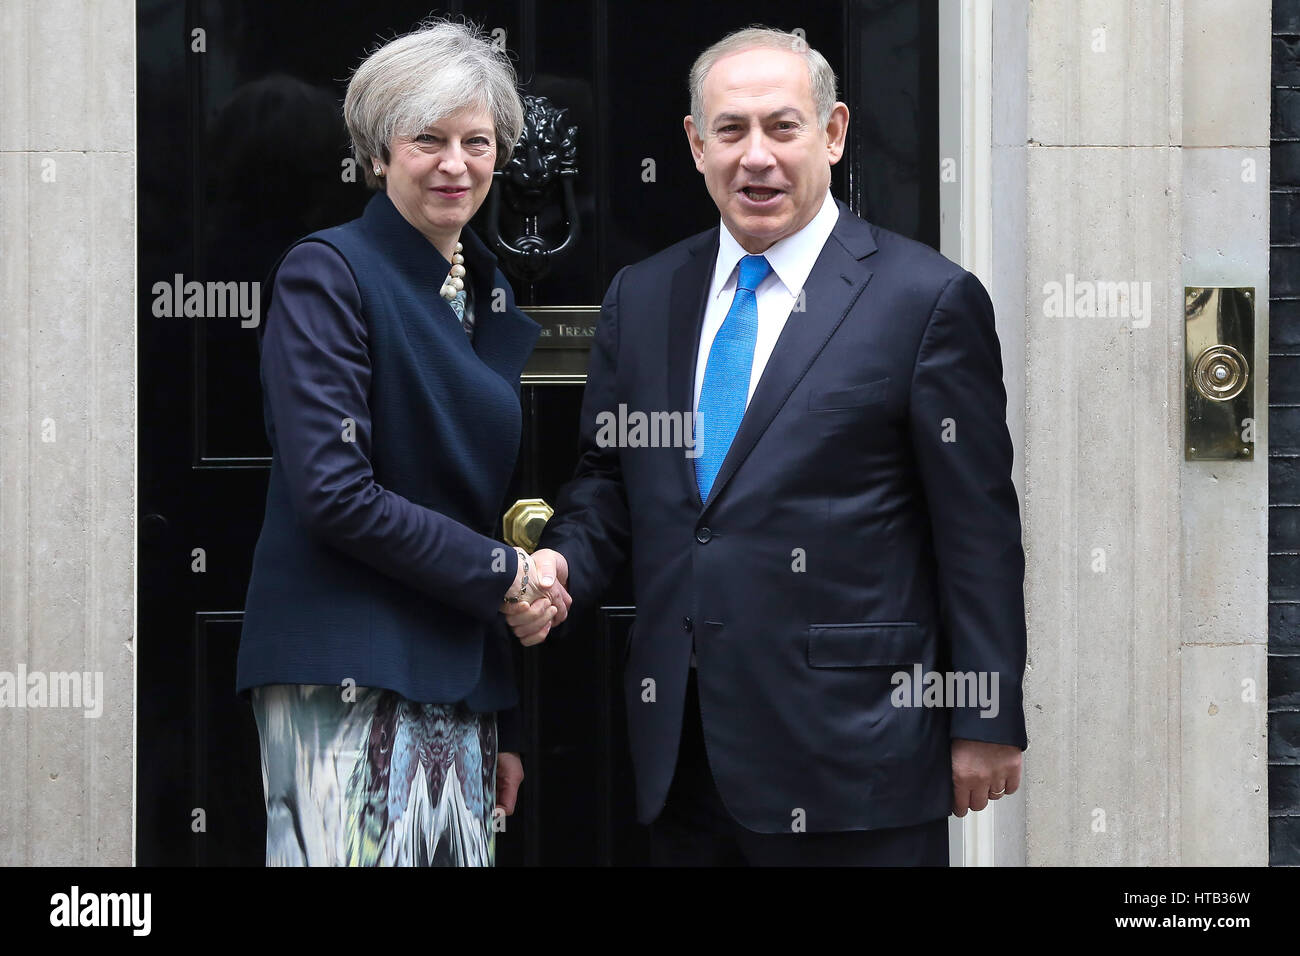 La Gran Bretagna è il primo ministro Theresa Maggio saluta il Primo ministro Benjamin Netanyahu di Israele a Downing Street con: Theresa Maggio, Benjamin Netanyahu dove: Londra, Regno Unito quando: 06 Feb 2017 Foto Stock